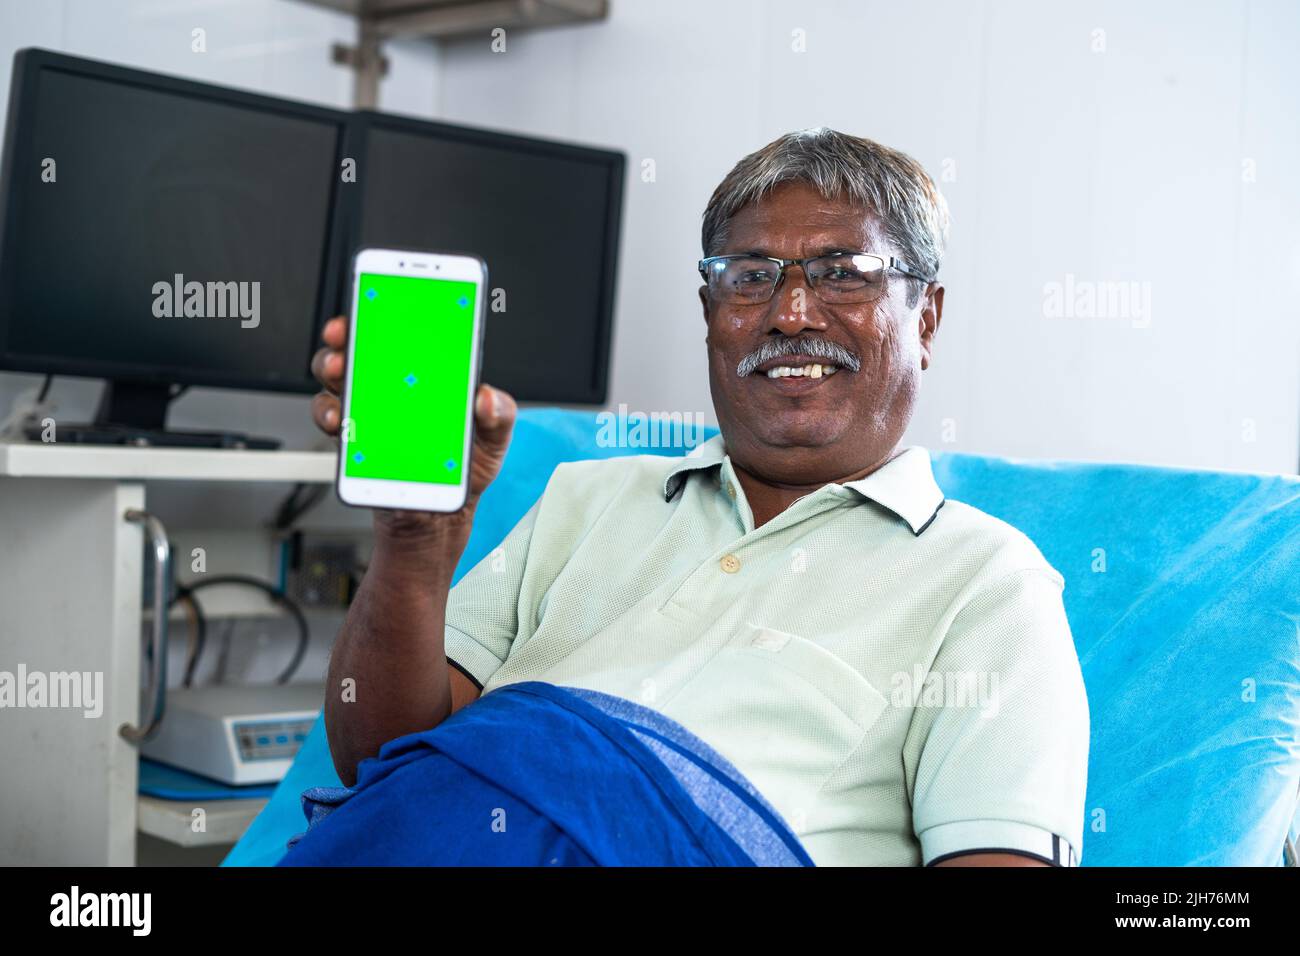 Heureux patient souriant montrant le téléphone mobile à écran vert en regardant la caméra pendant le sommeil sur le lit à l'hôpital - concept de service de santé Banque D'Images